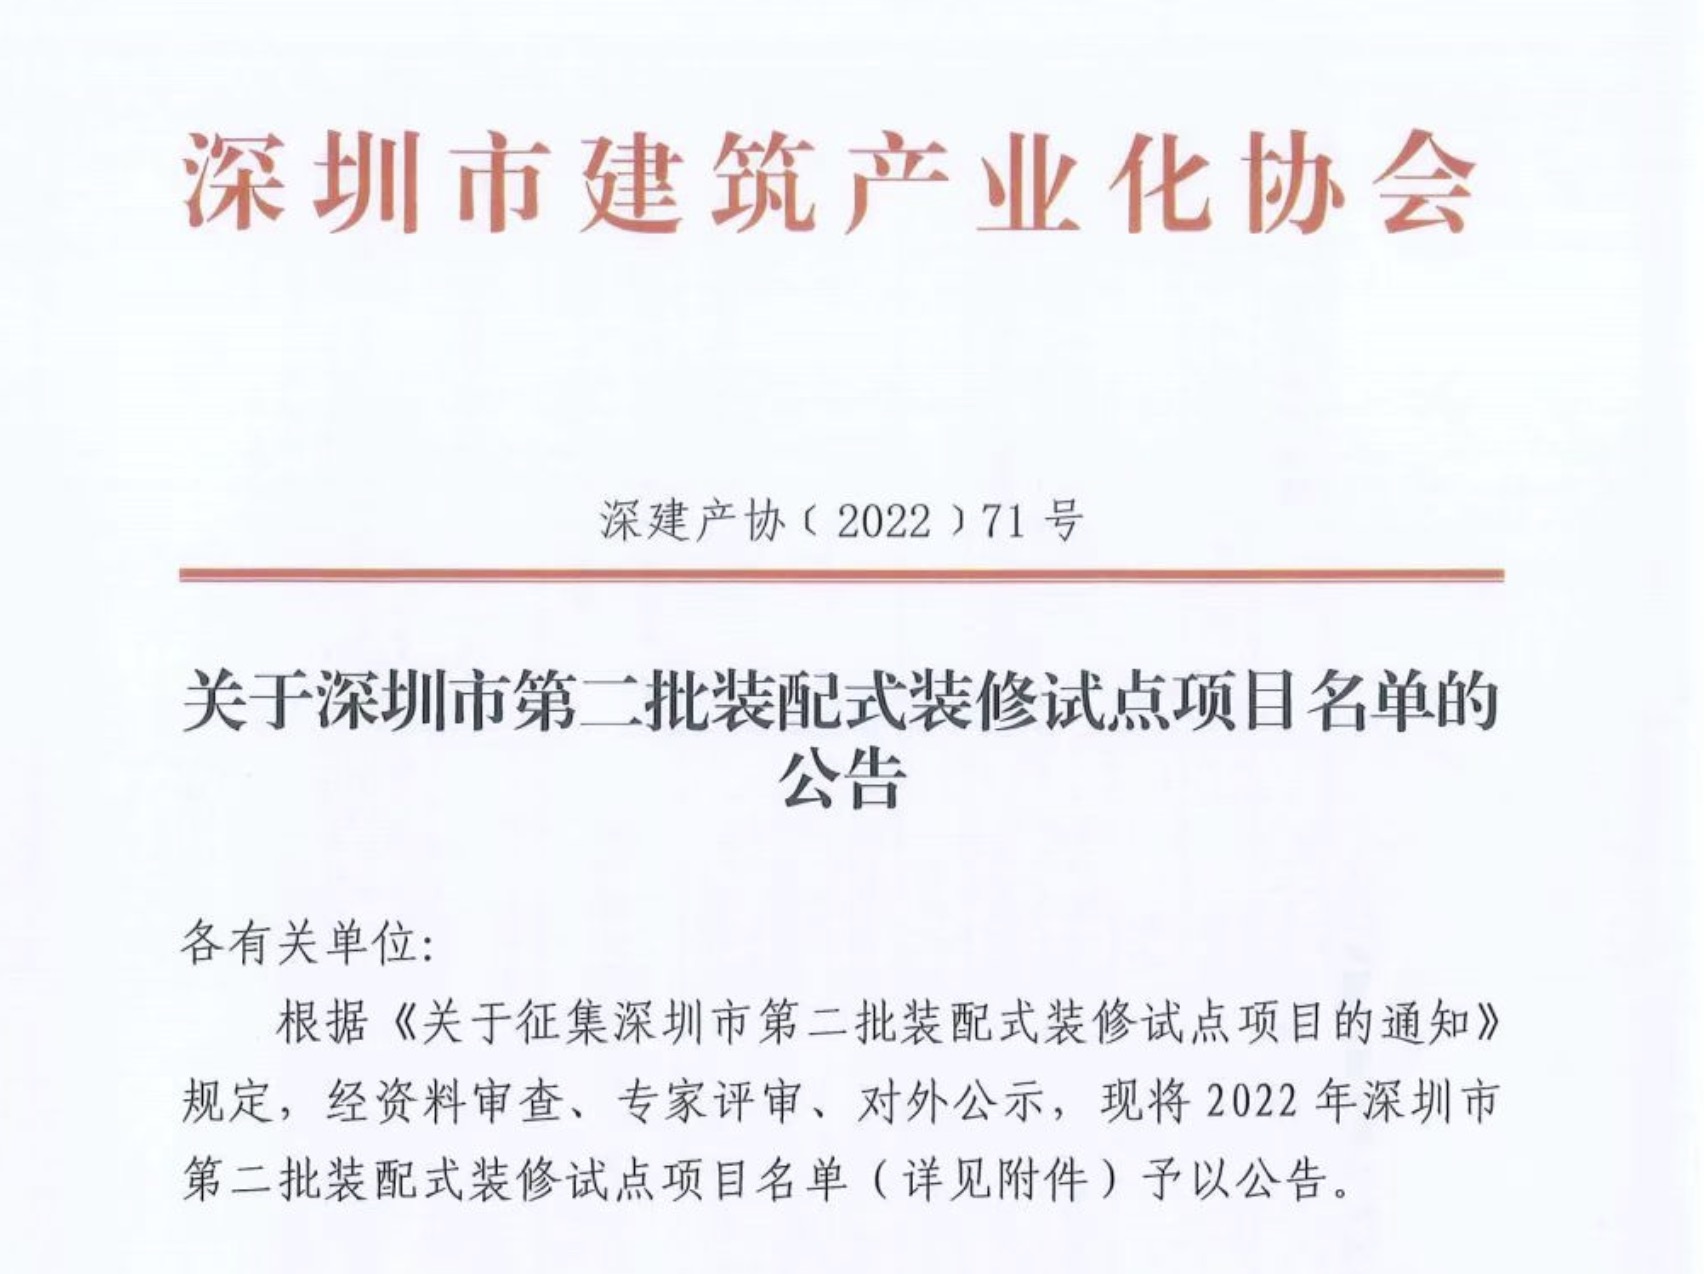 关于深圳市第二批装配式装修试点项目名单的公告